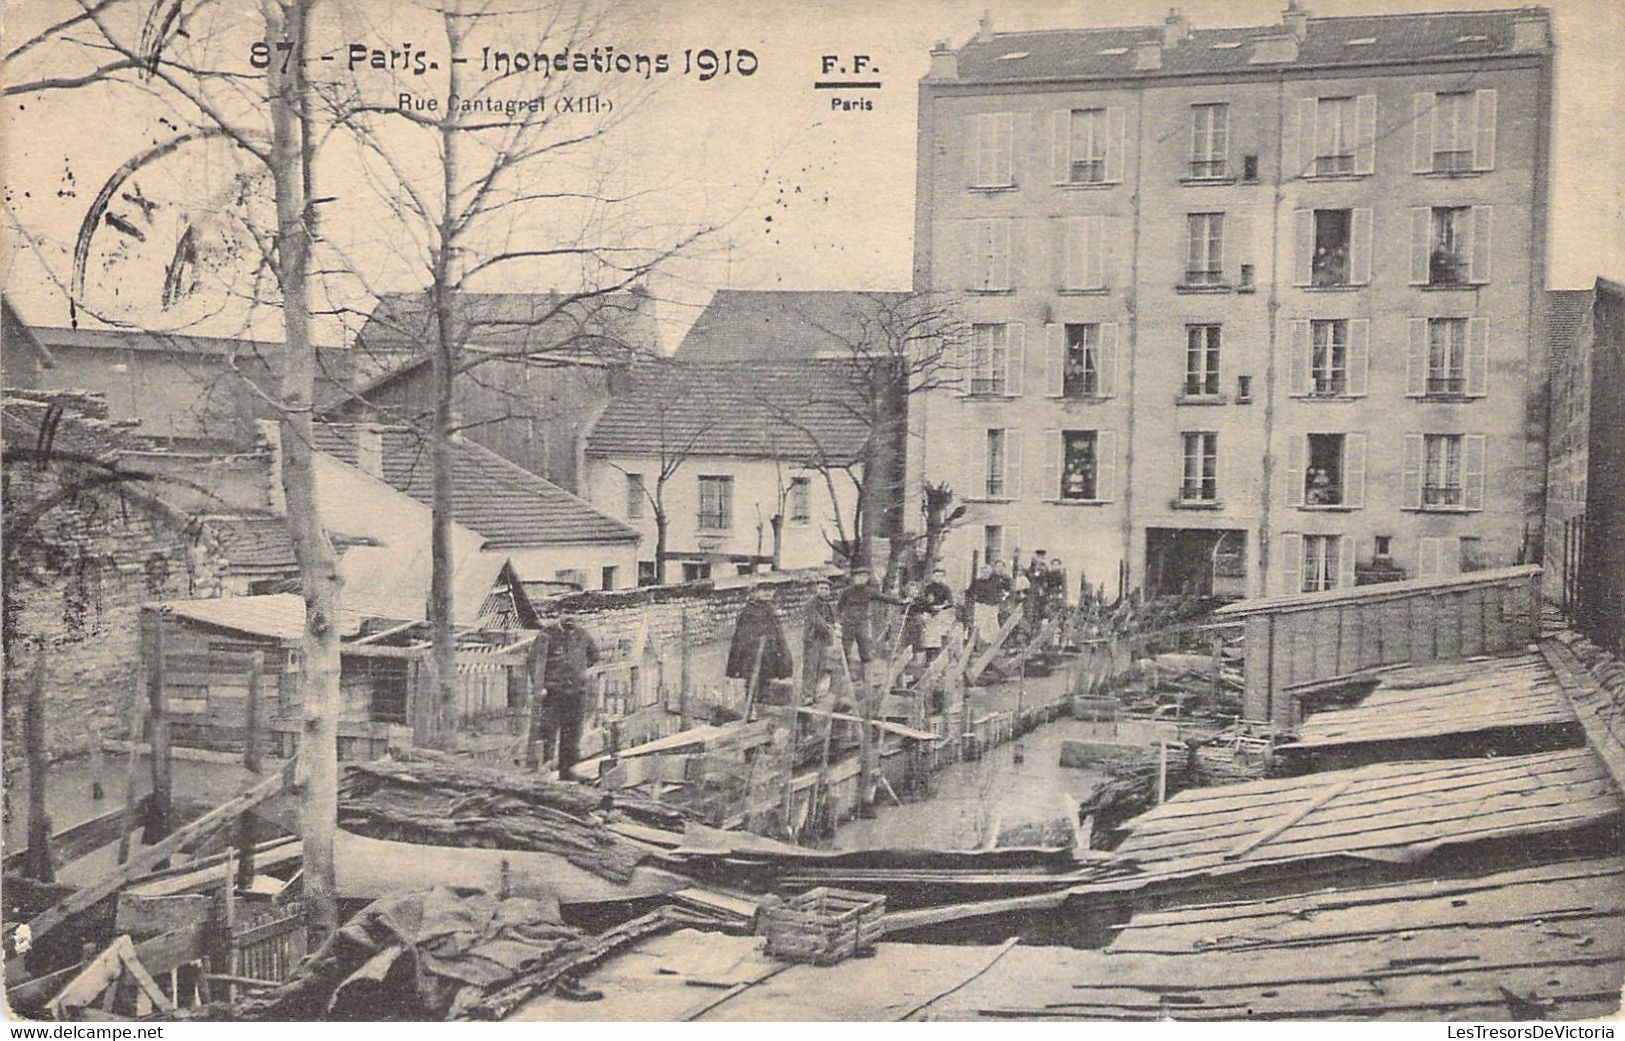 CPA France - Paris - Inondations De 1910 - Rue Cantagrel - XIIIe - F. F. Paris - Oblitérée Bruxelles 1910 - Überschwemmung 1910